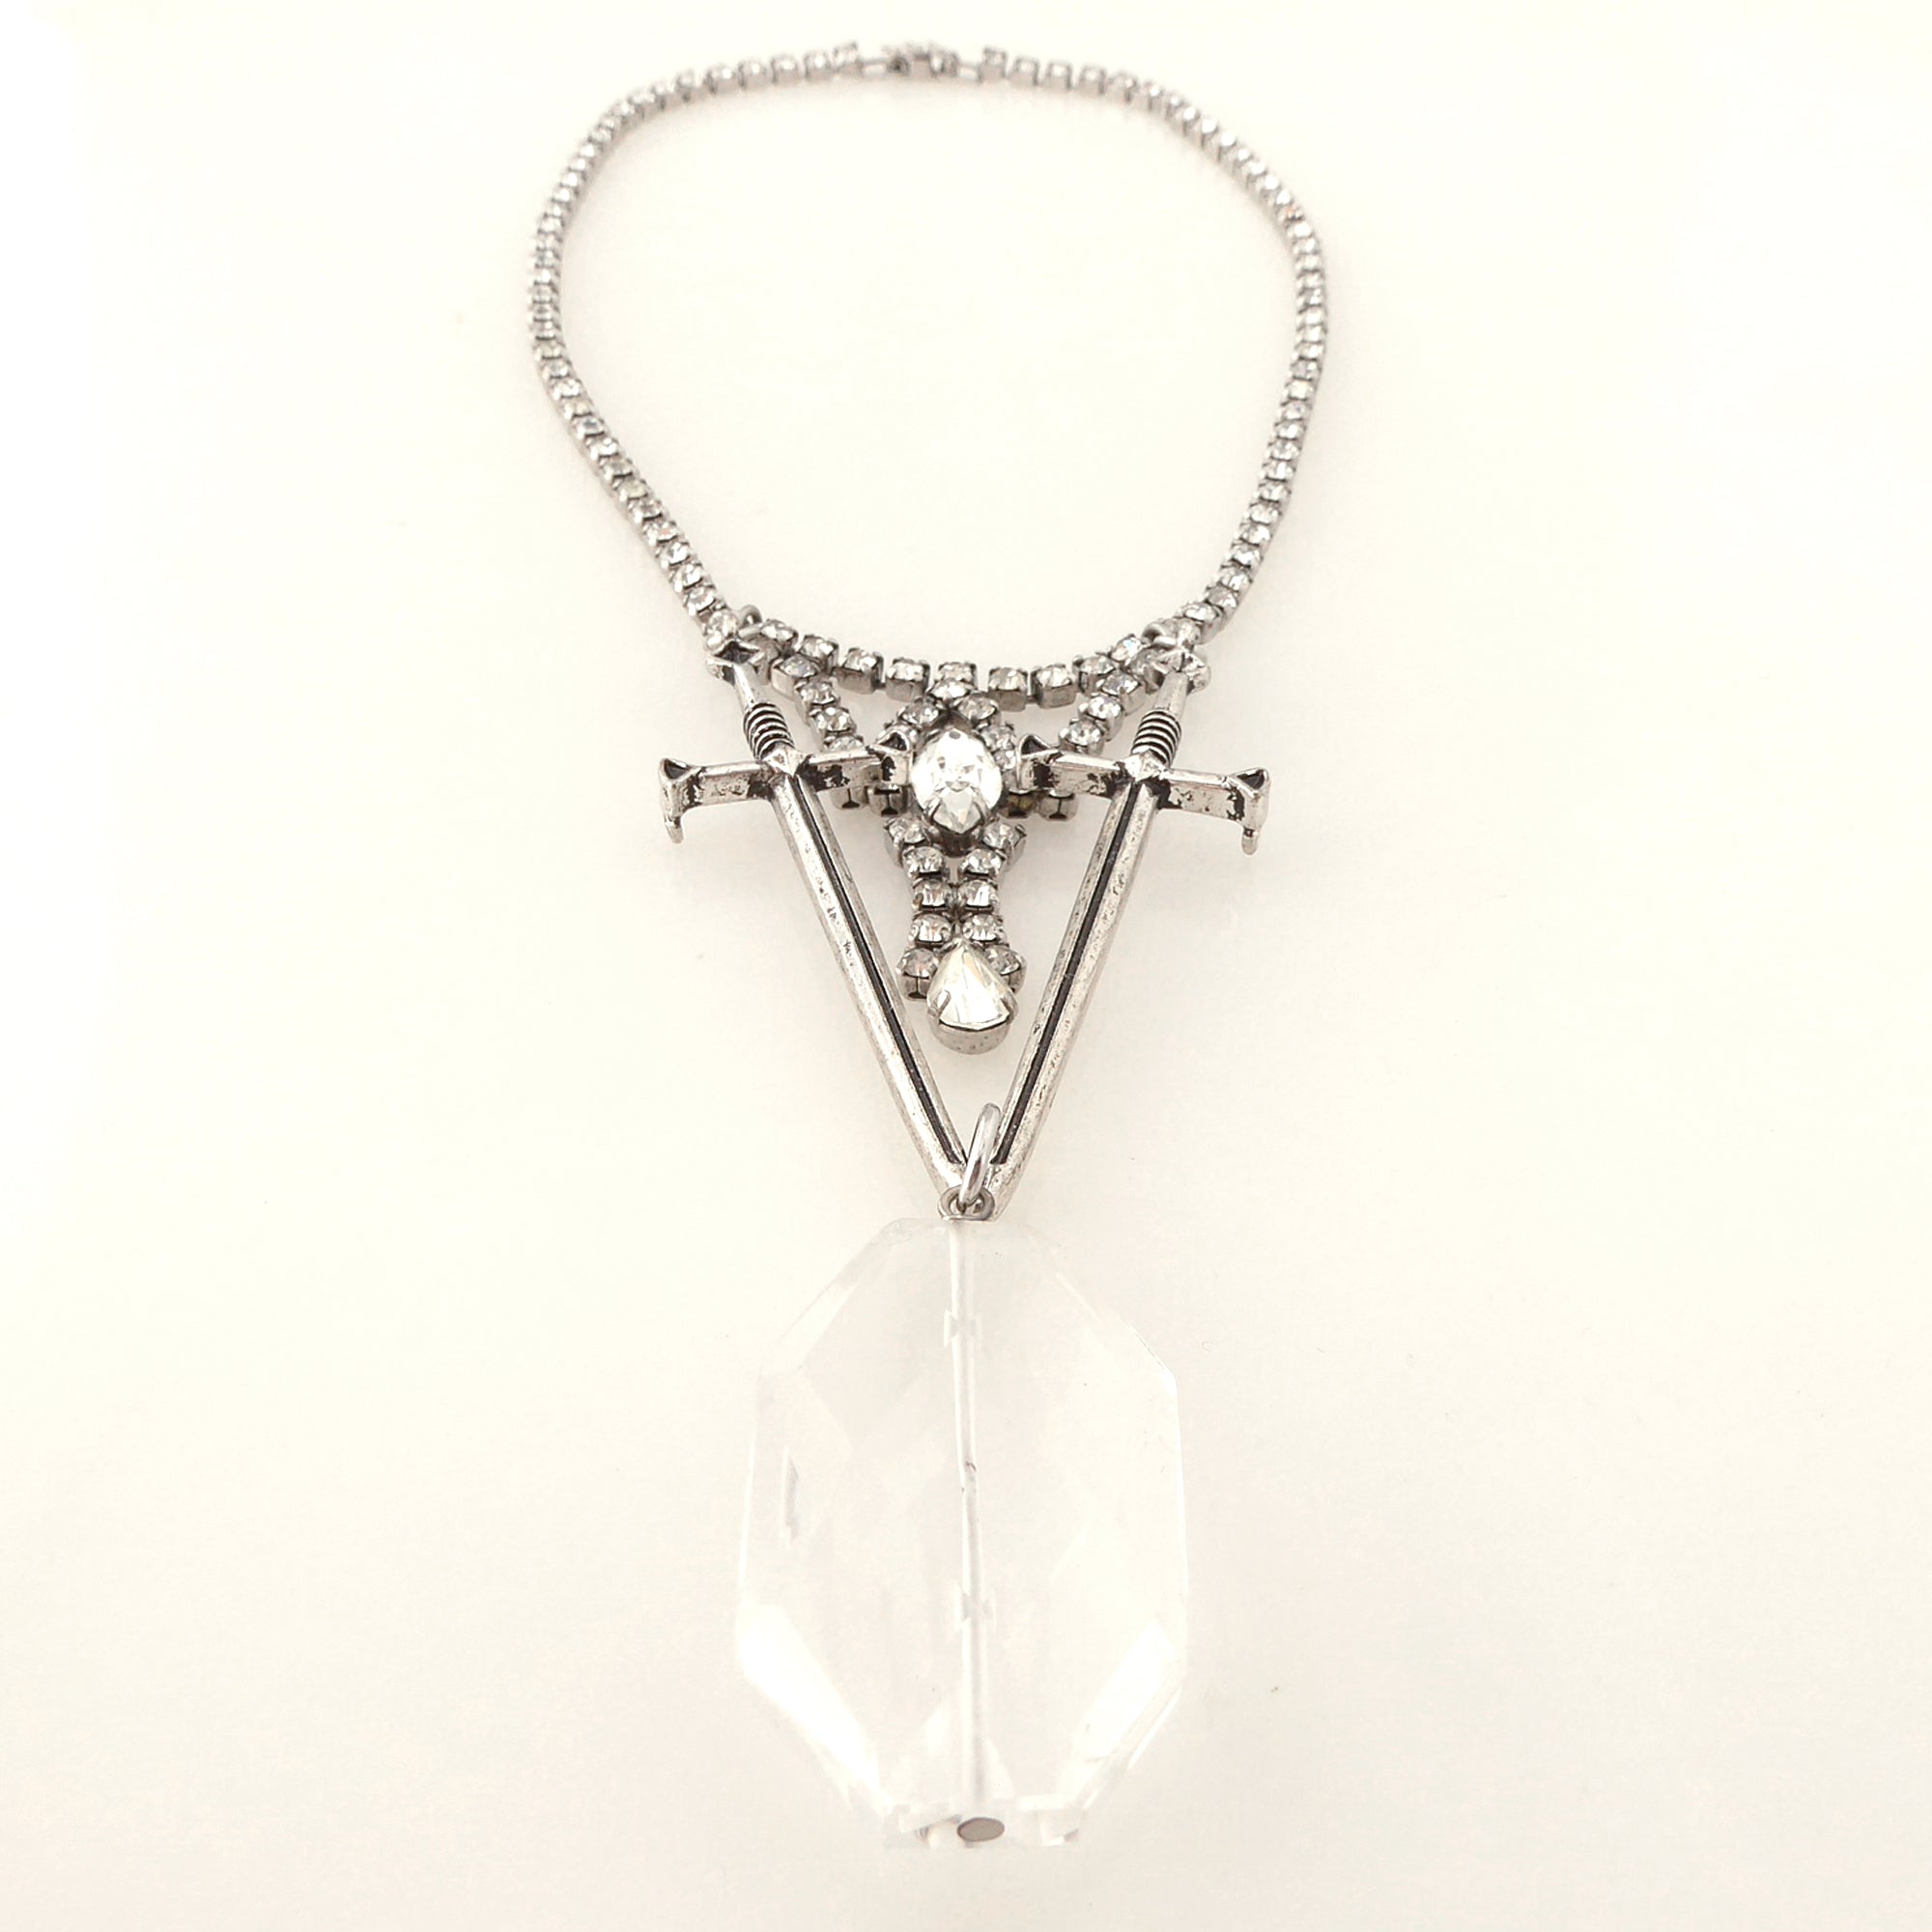 Dual sword quartz necklace by Jenny Dayco 3